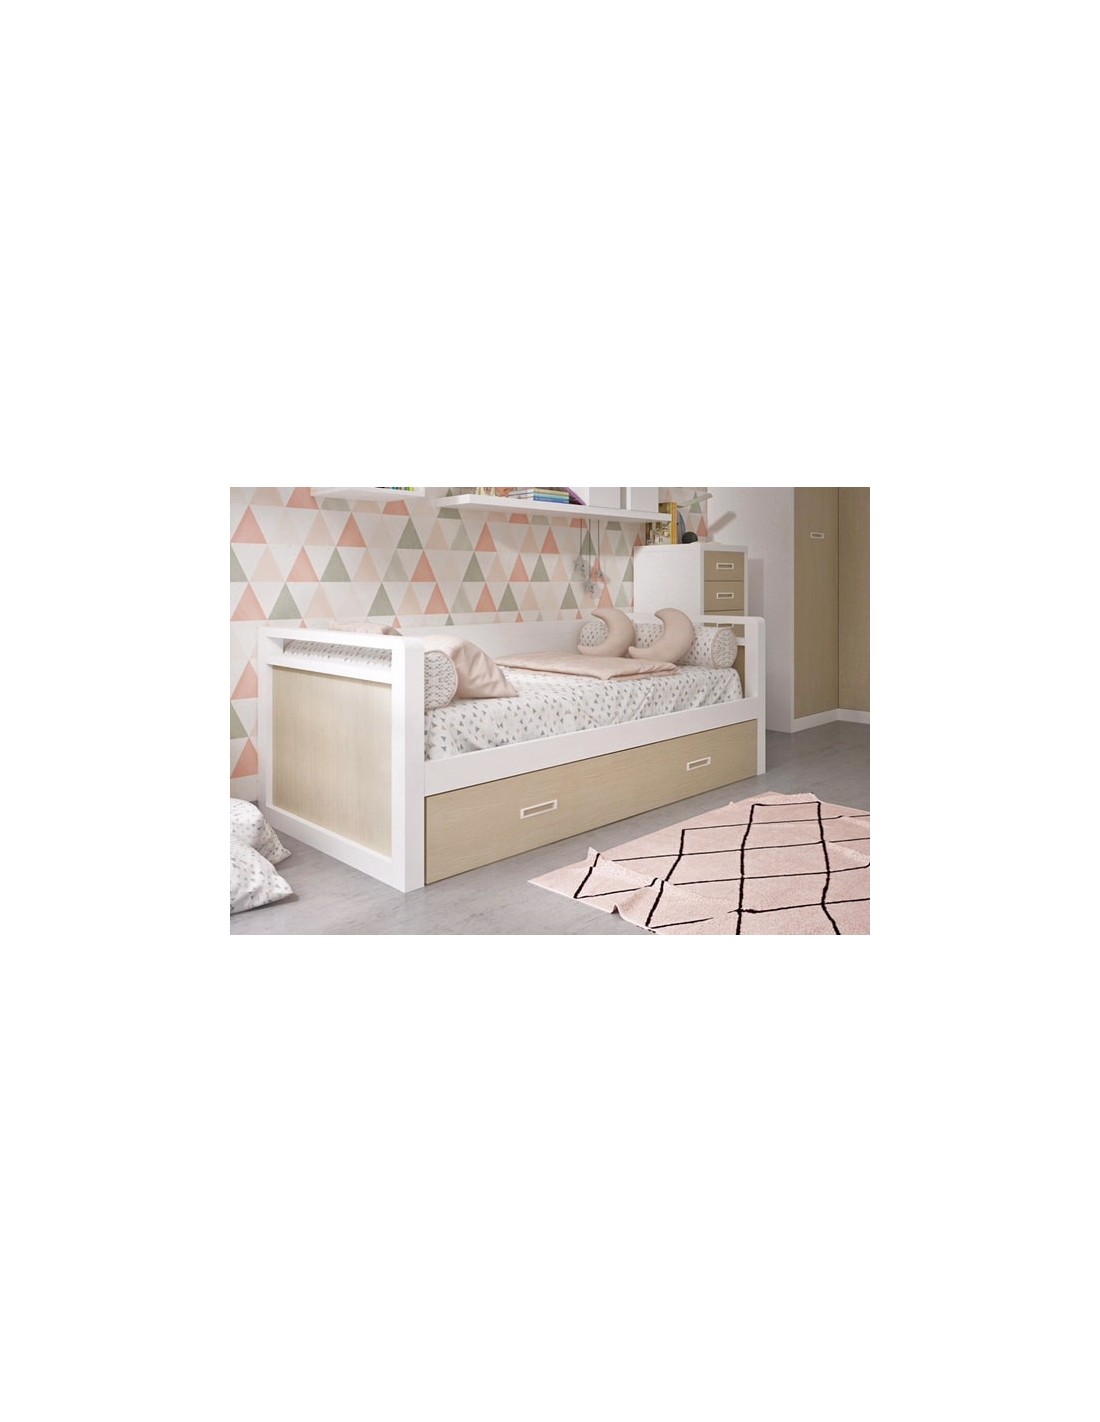 Comprar cama nido Diván de madera de roble|Tienda muebles online.